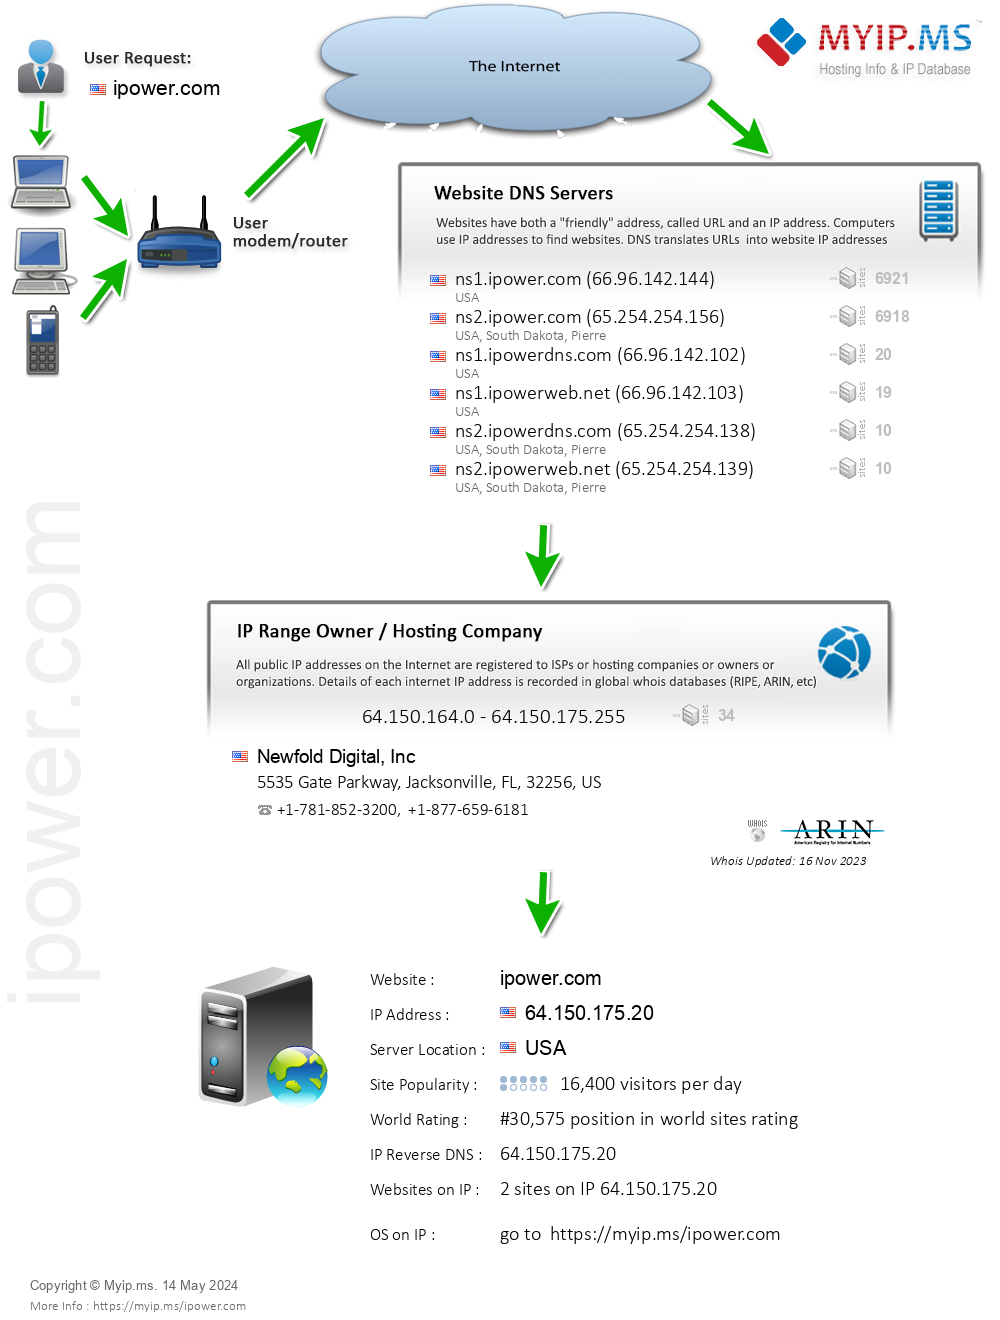 Ipower.com - Website Hosting Visual IP Diagram